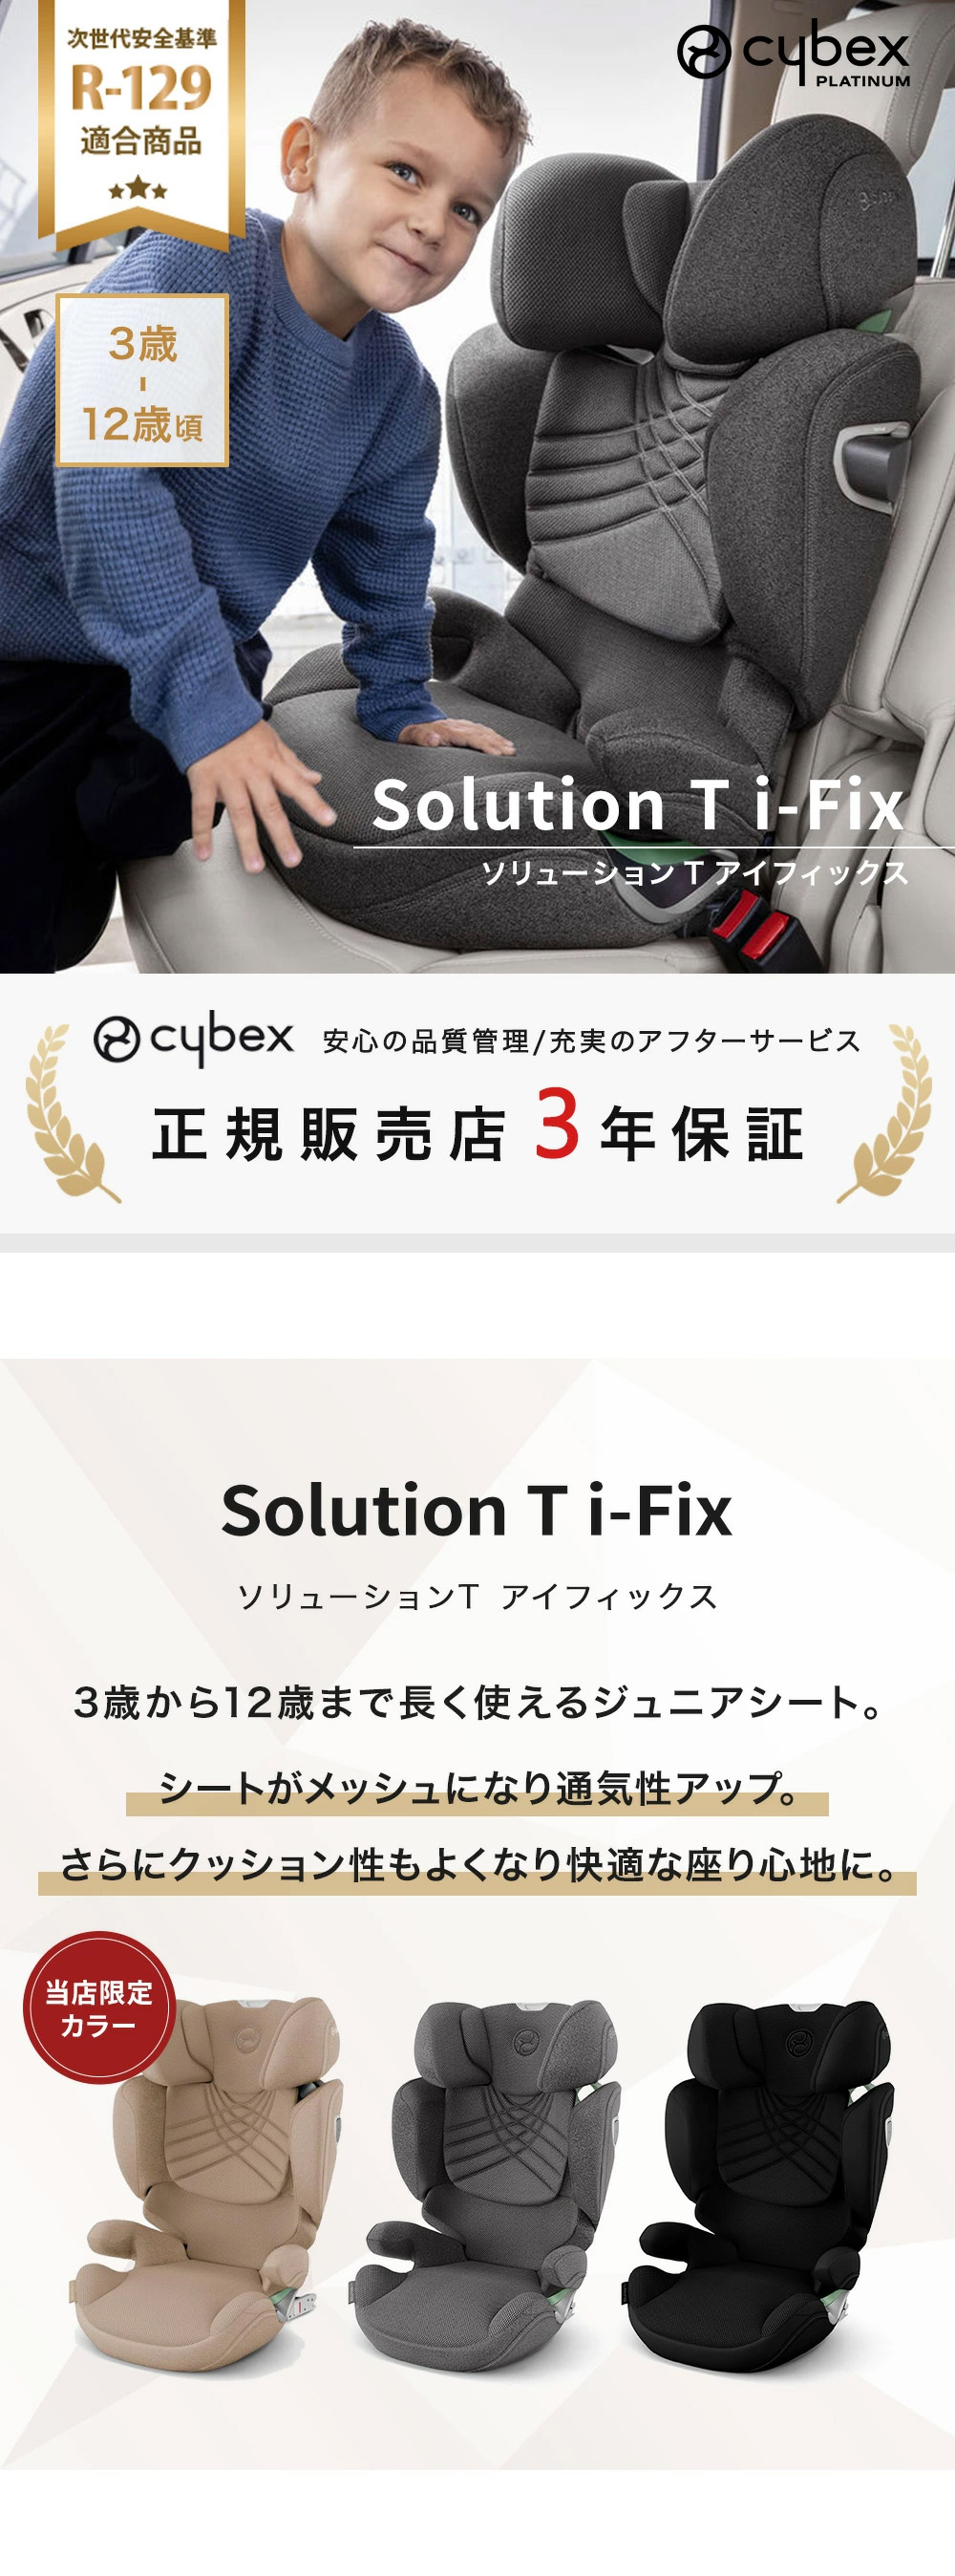 サイベックス ジュニアシート cybex solution Q-fix - チャイルドシート